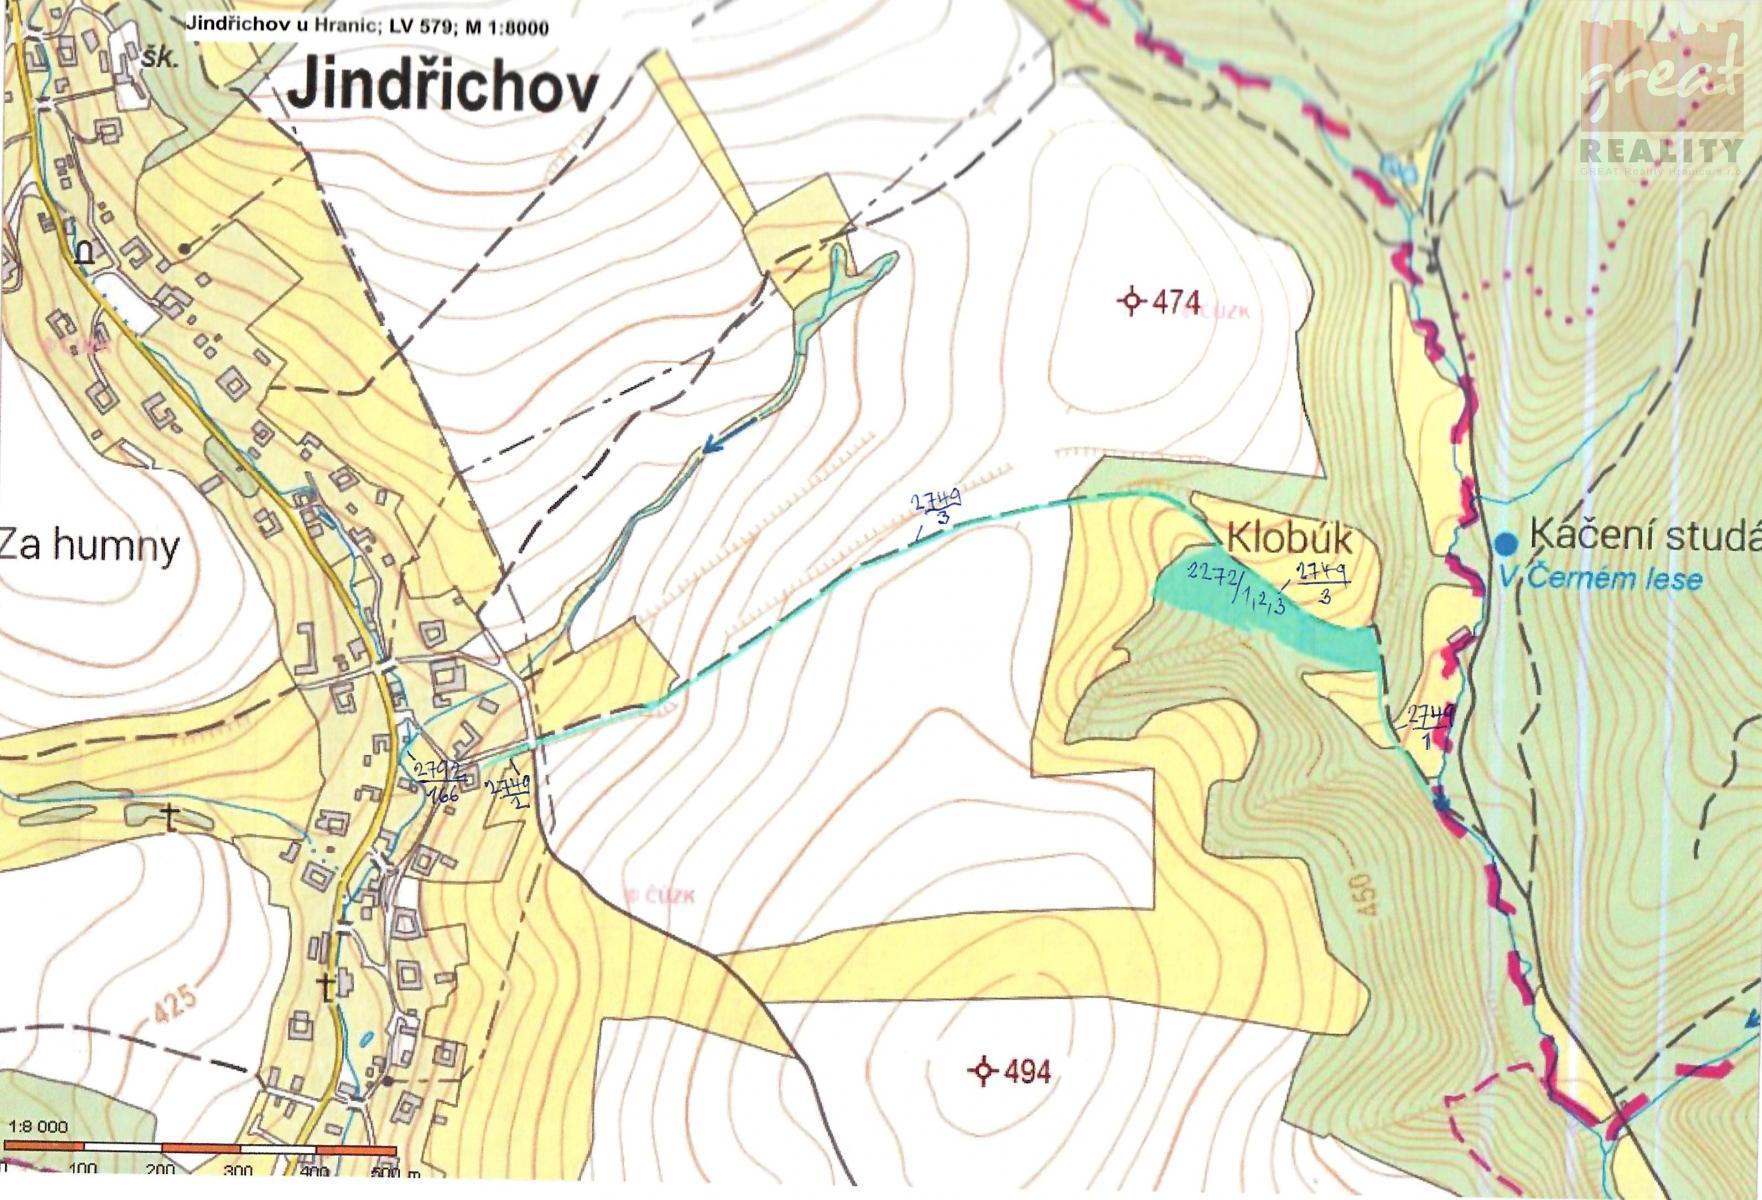 jindichov - mapa.jpg